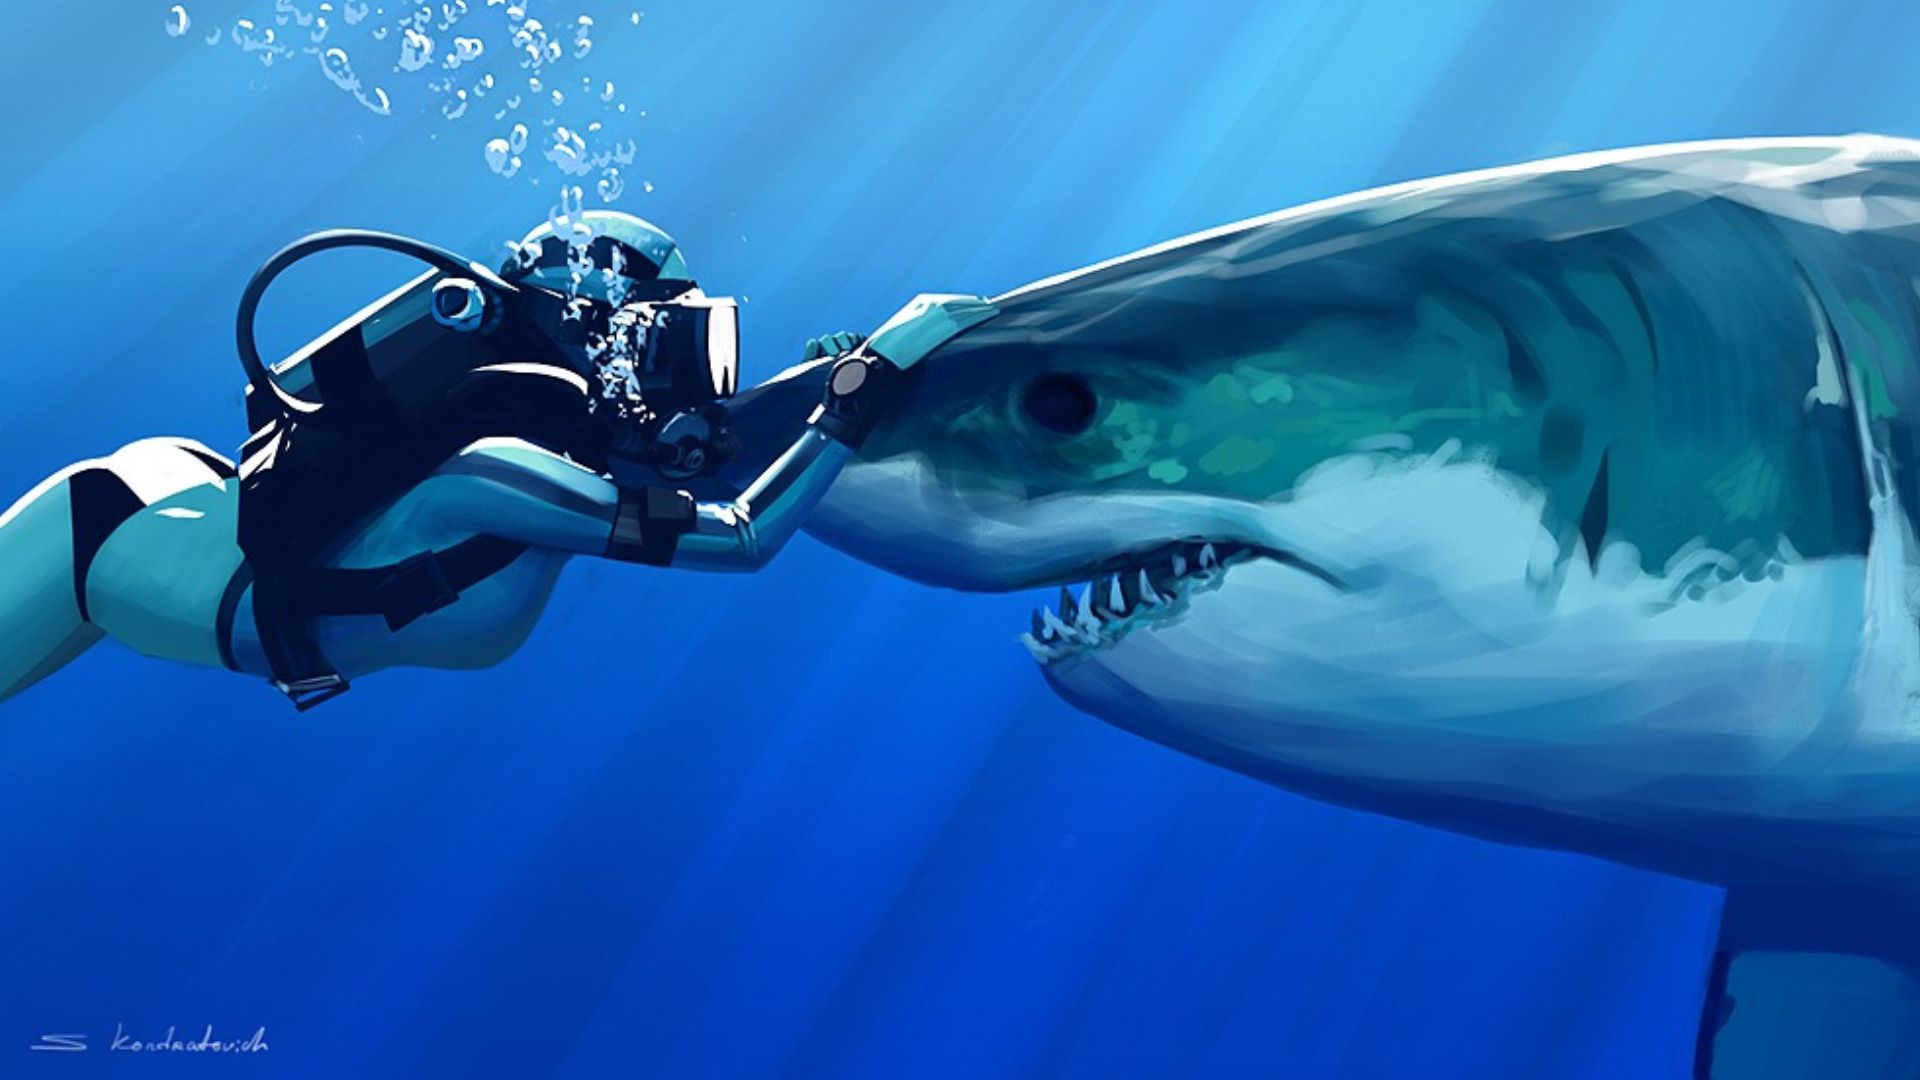 HD Wallpaper Only. Shark art, Shark, White sharks